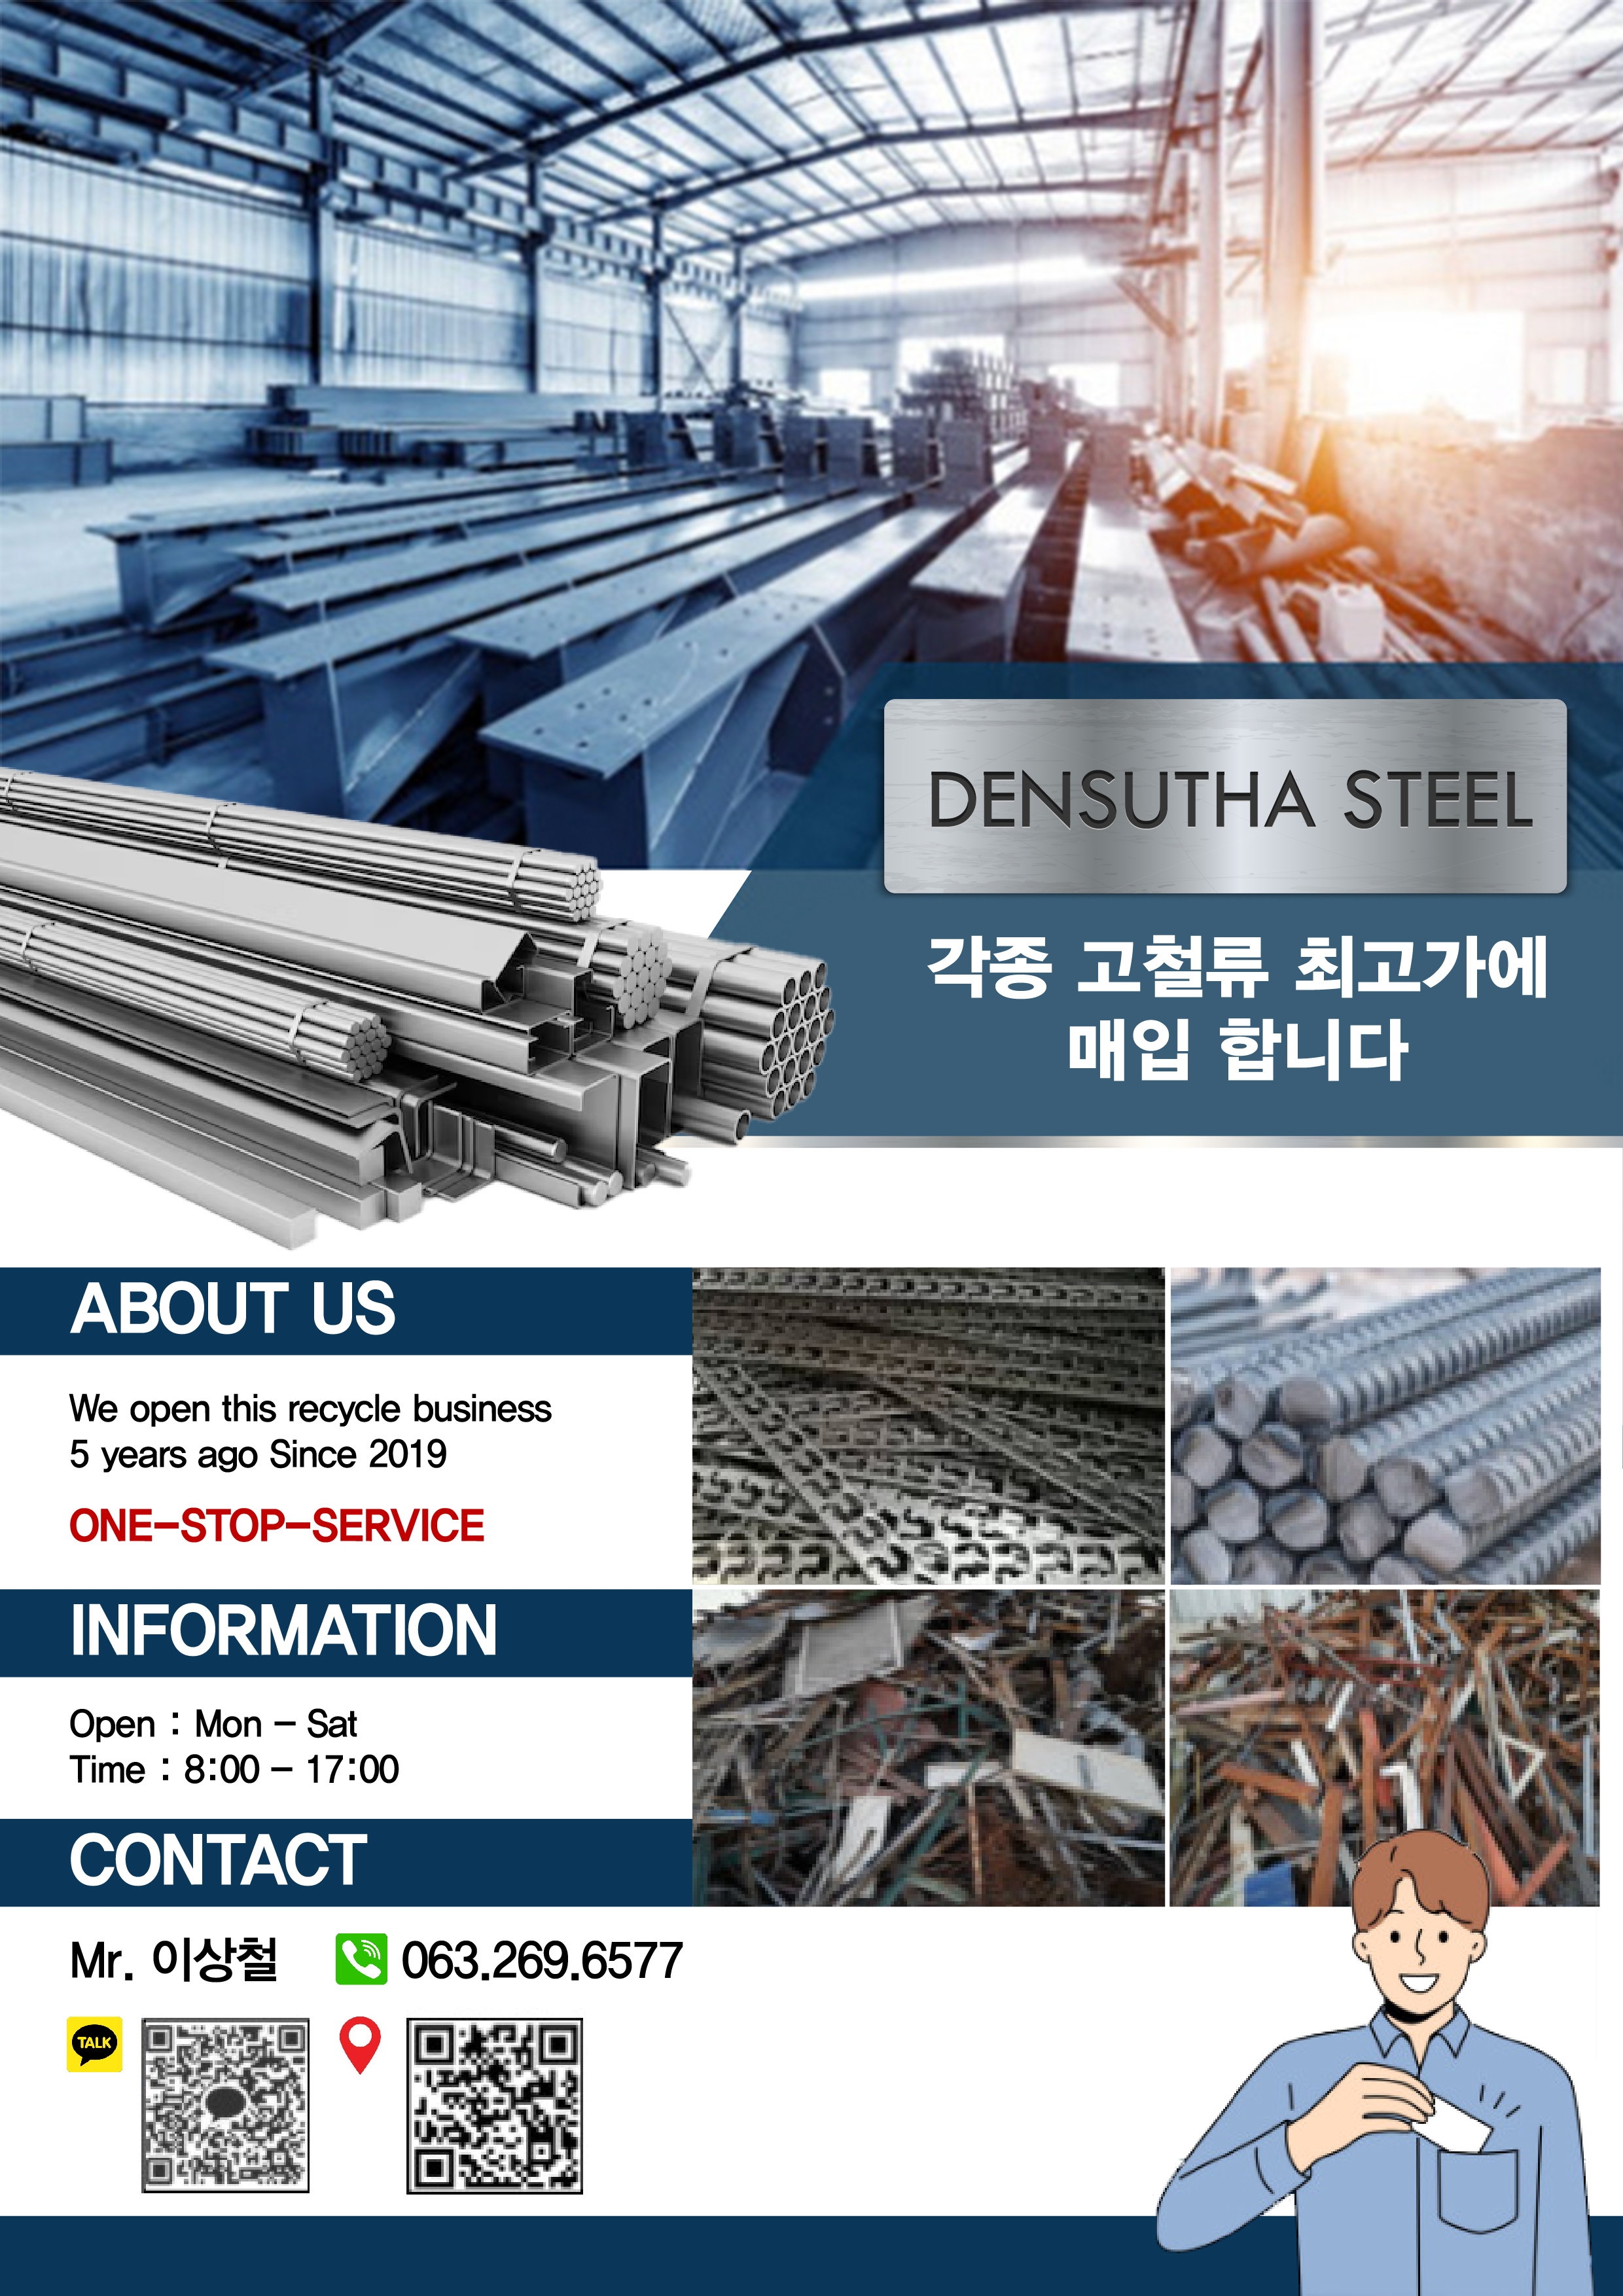 densutha steel